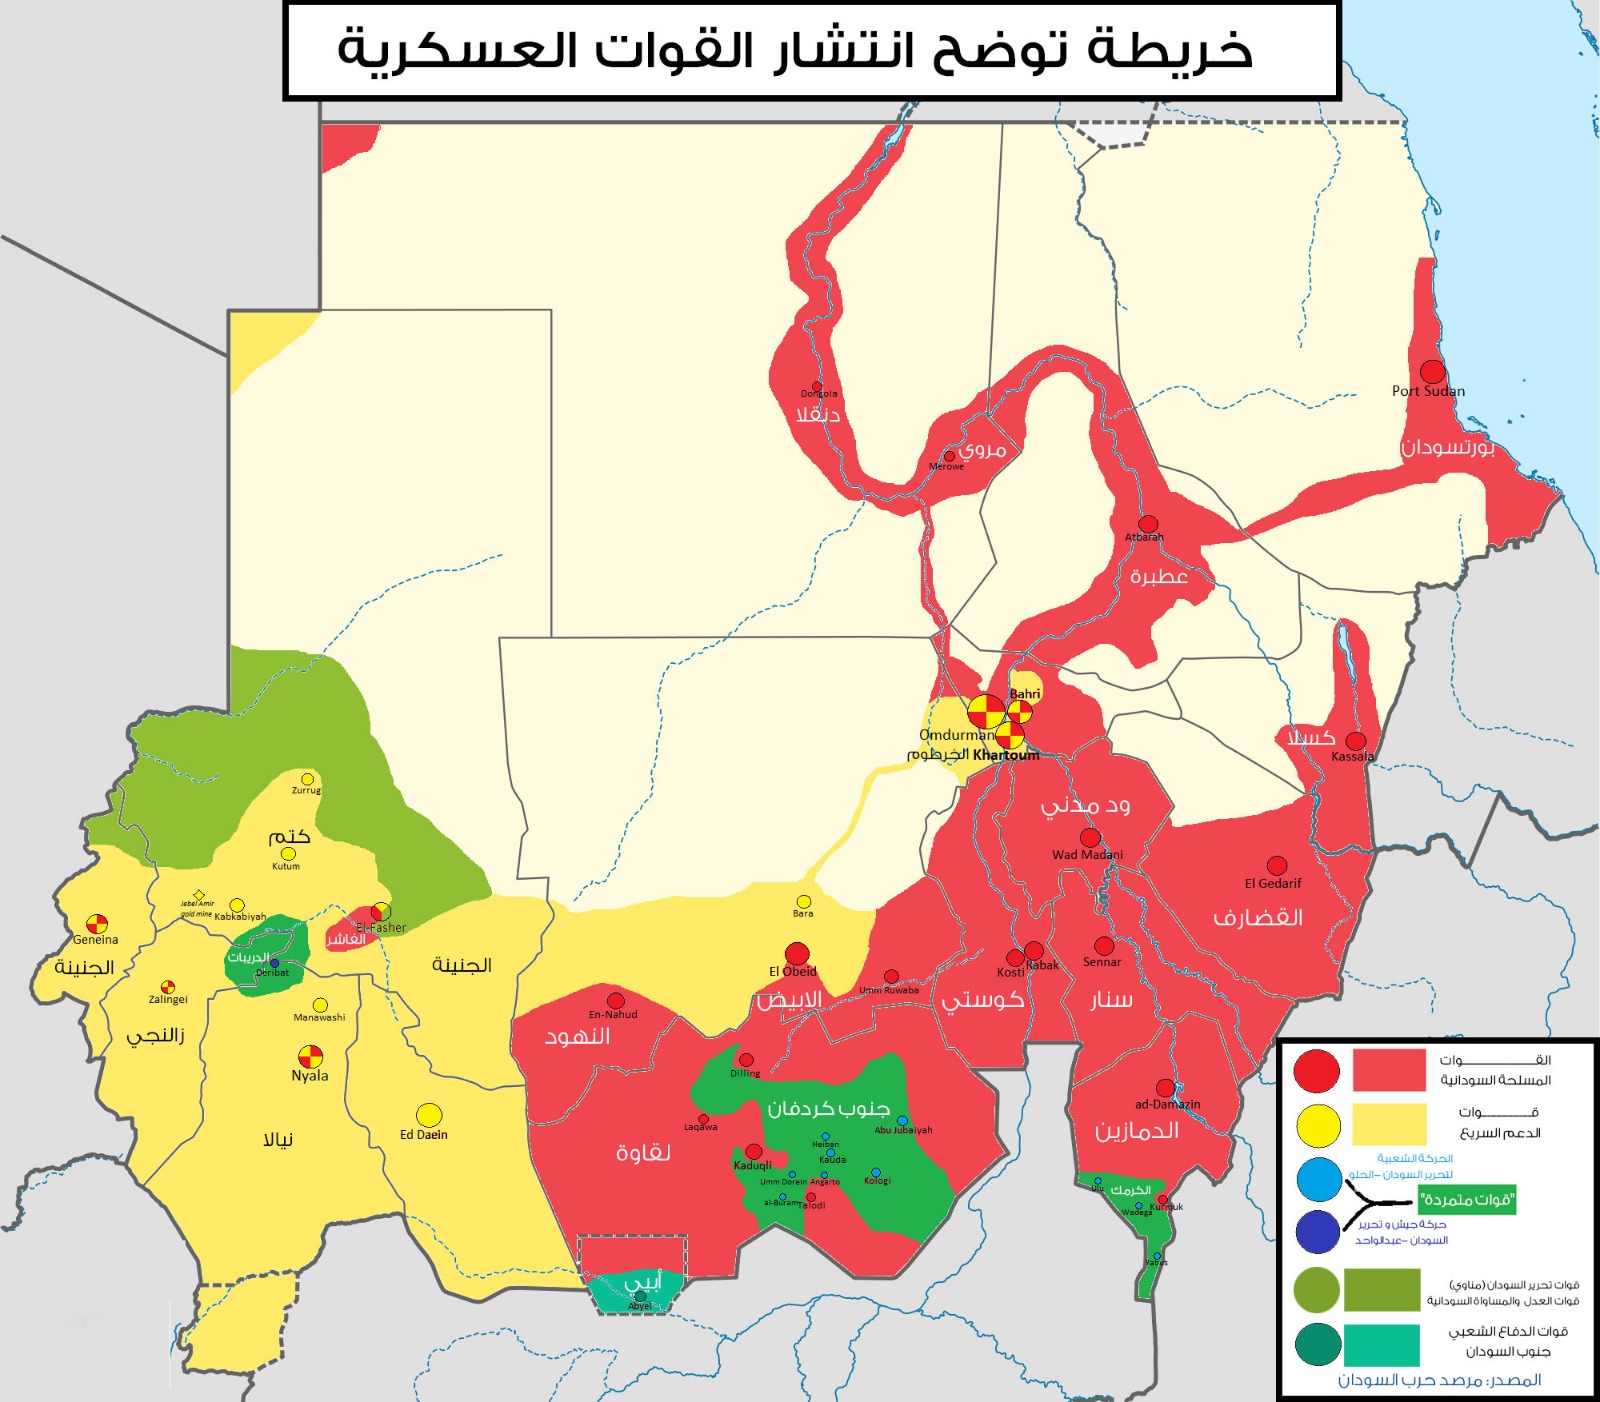 السودان "كنز الموارد" مُهدد بالتشظي إلى إقطاعيات مسلحة